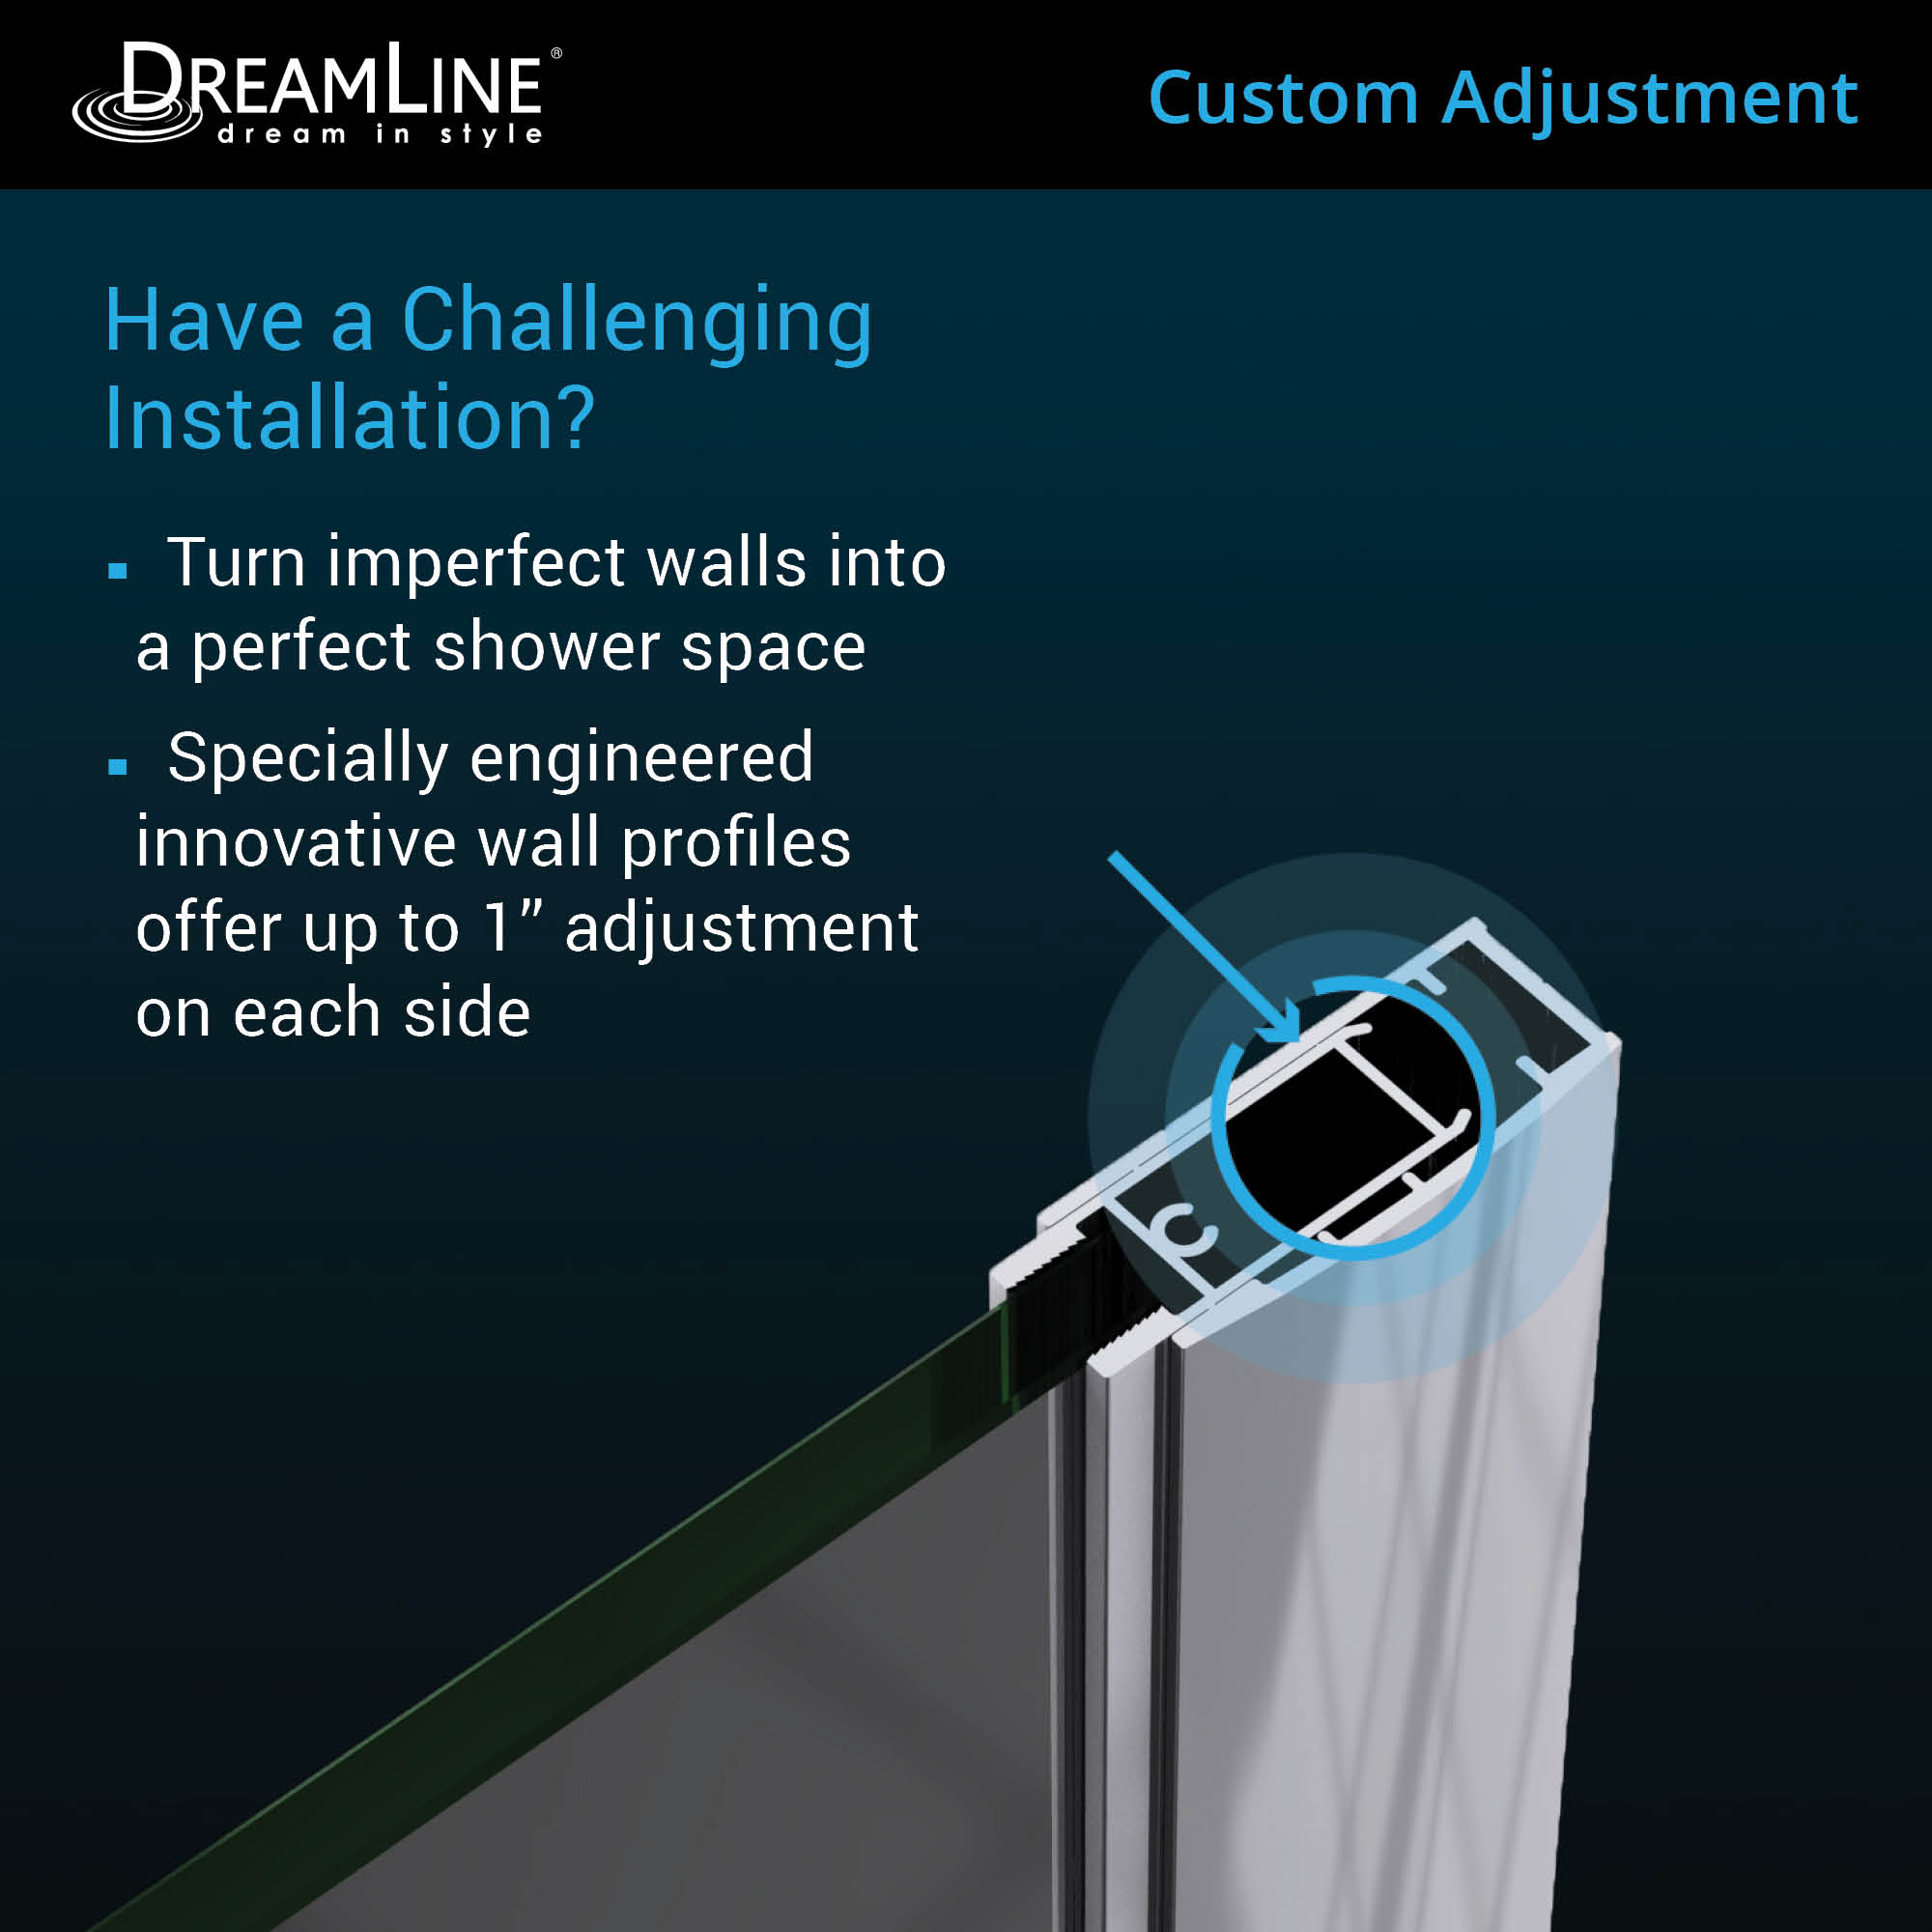 DreamLine Elegance-LS 36 1/4 - 38 1/4 in. W x 72 in. H Frameless Pivot Shower Door in Chrome